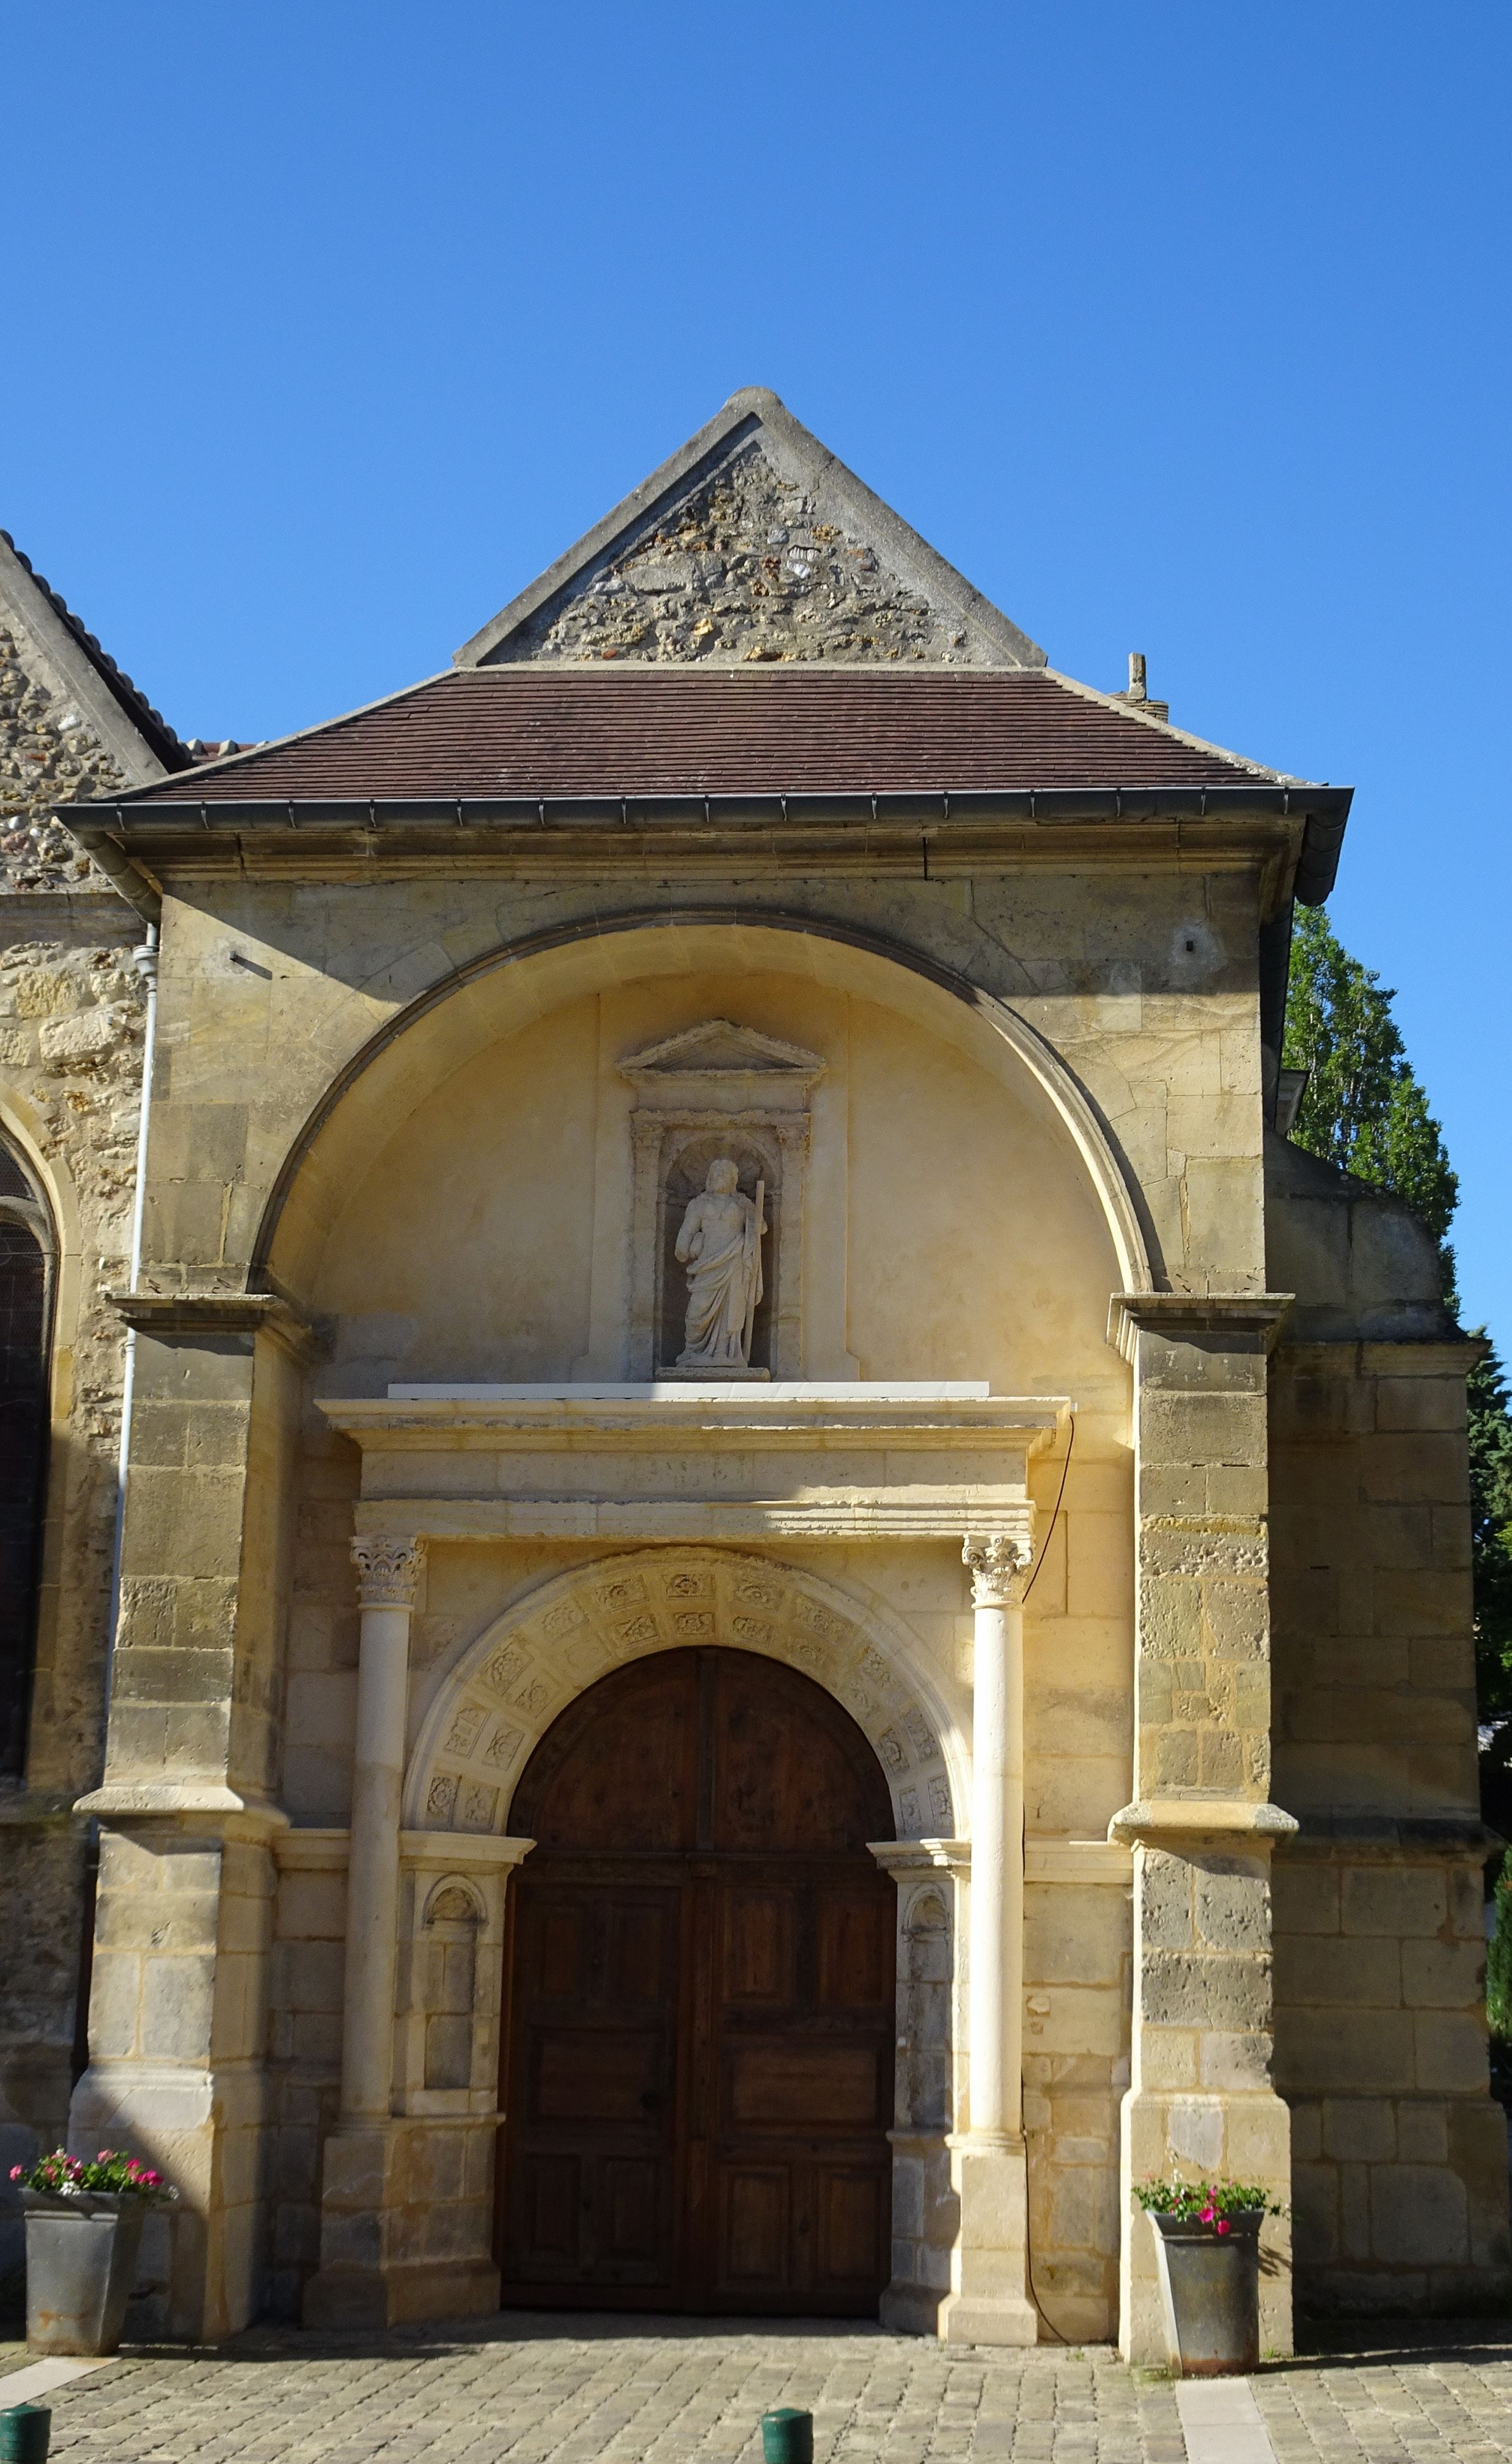 Le portail Renaissance daté de 1549